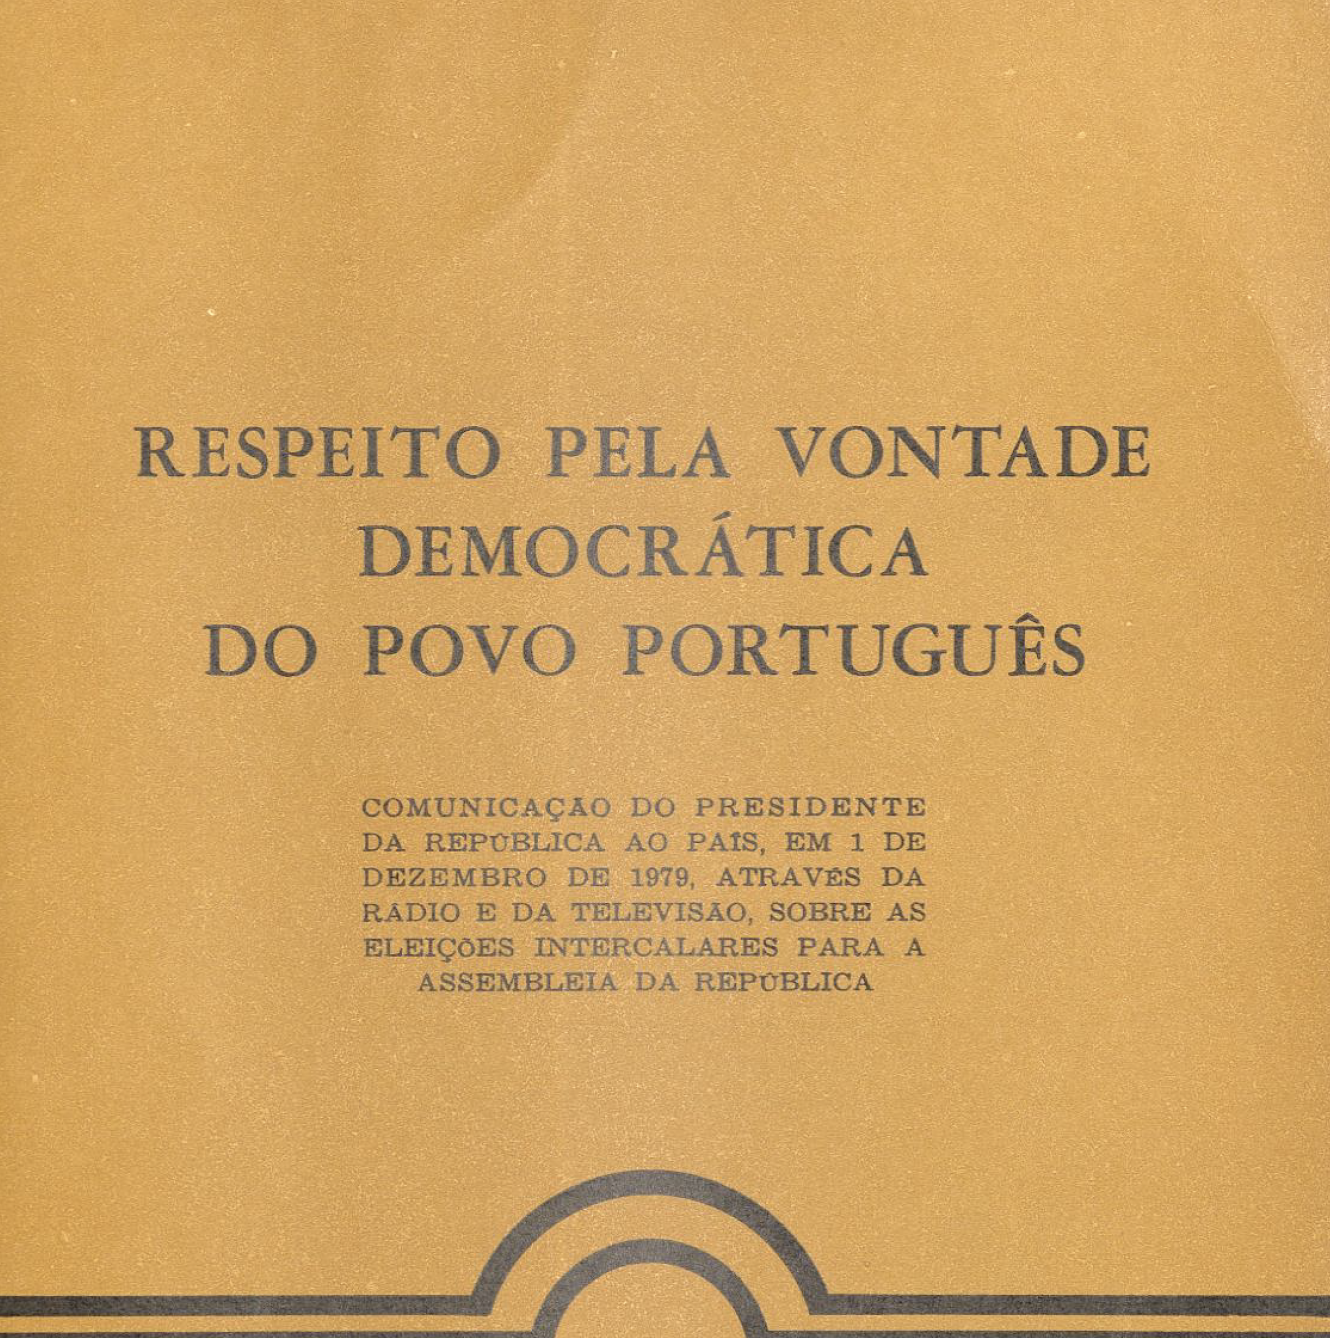 Respeito pela vontade democrática do povo português